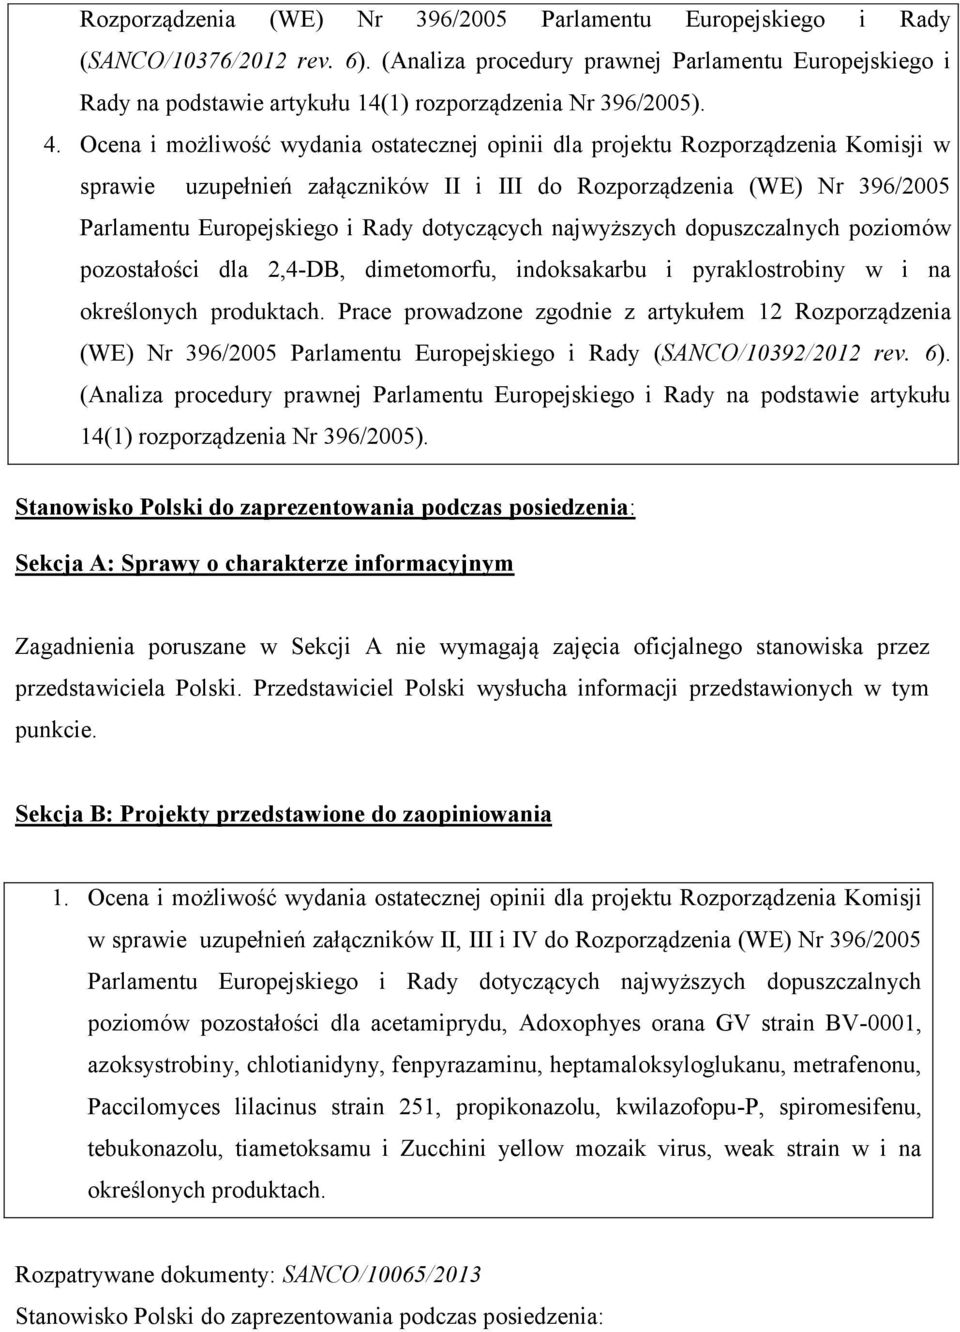 Ocena i możliwość wydania ostatecznej opinii dla projektu Rozporządzenia Komisji w sprawie uzupełnień załączników II i III do Rozporządzenia (WE) Nr 396/2005 Parlamentu Europejskiego i Rady